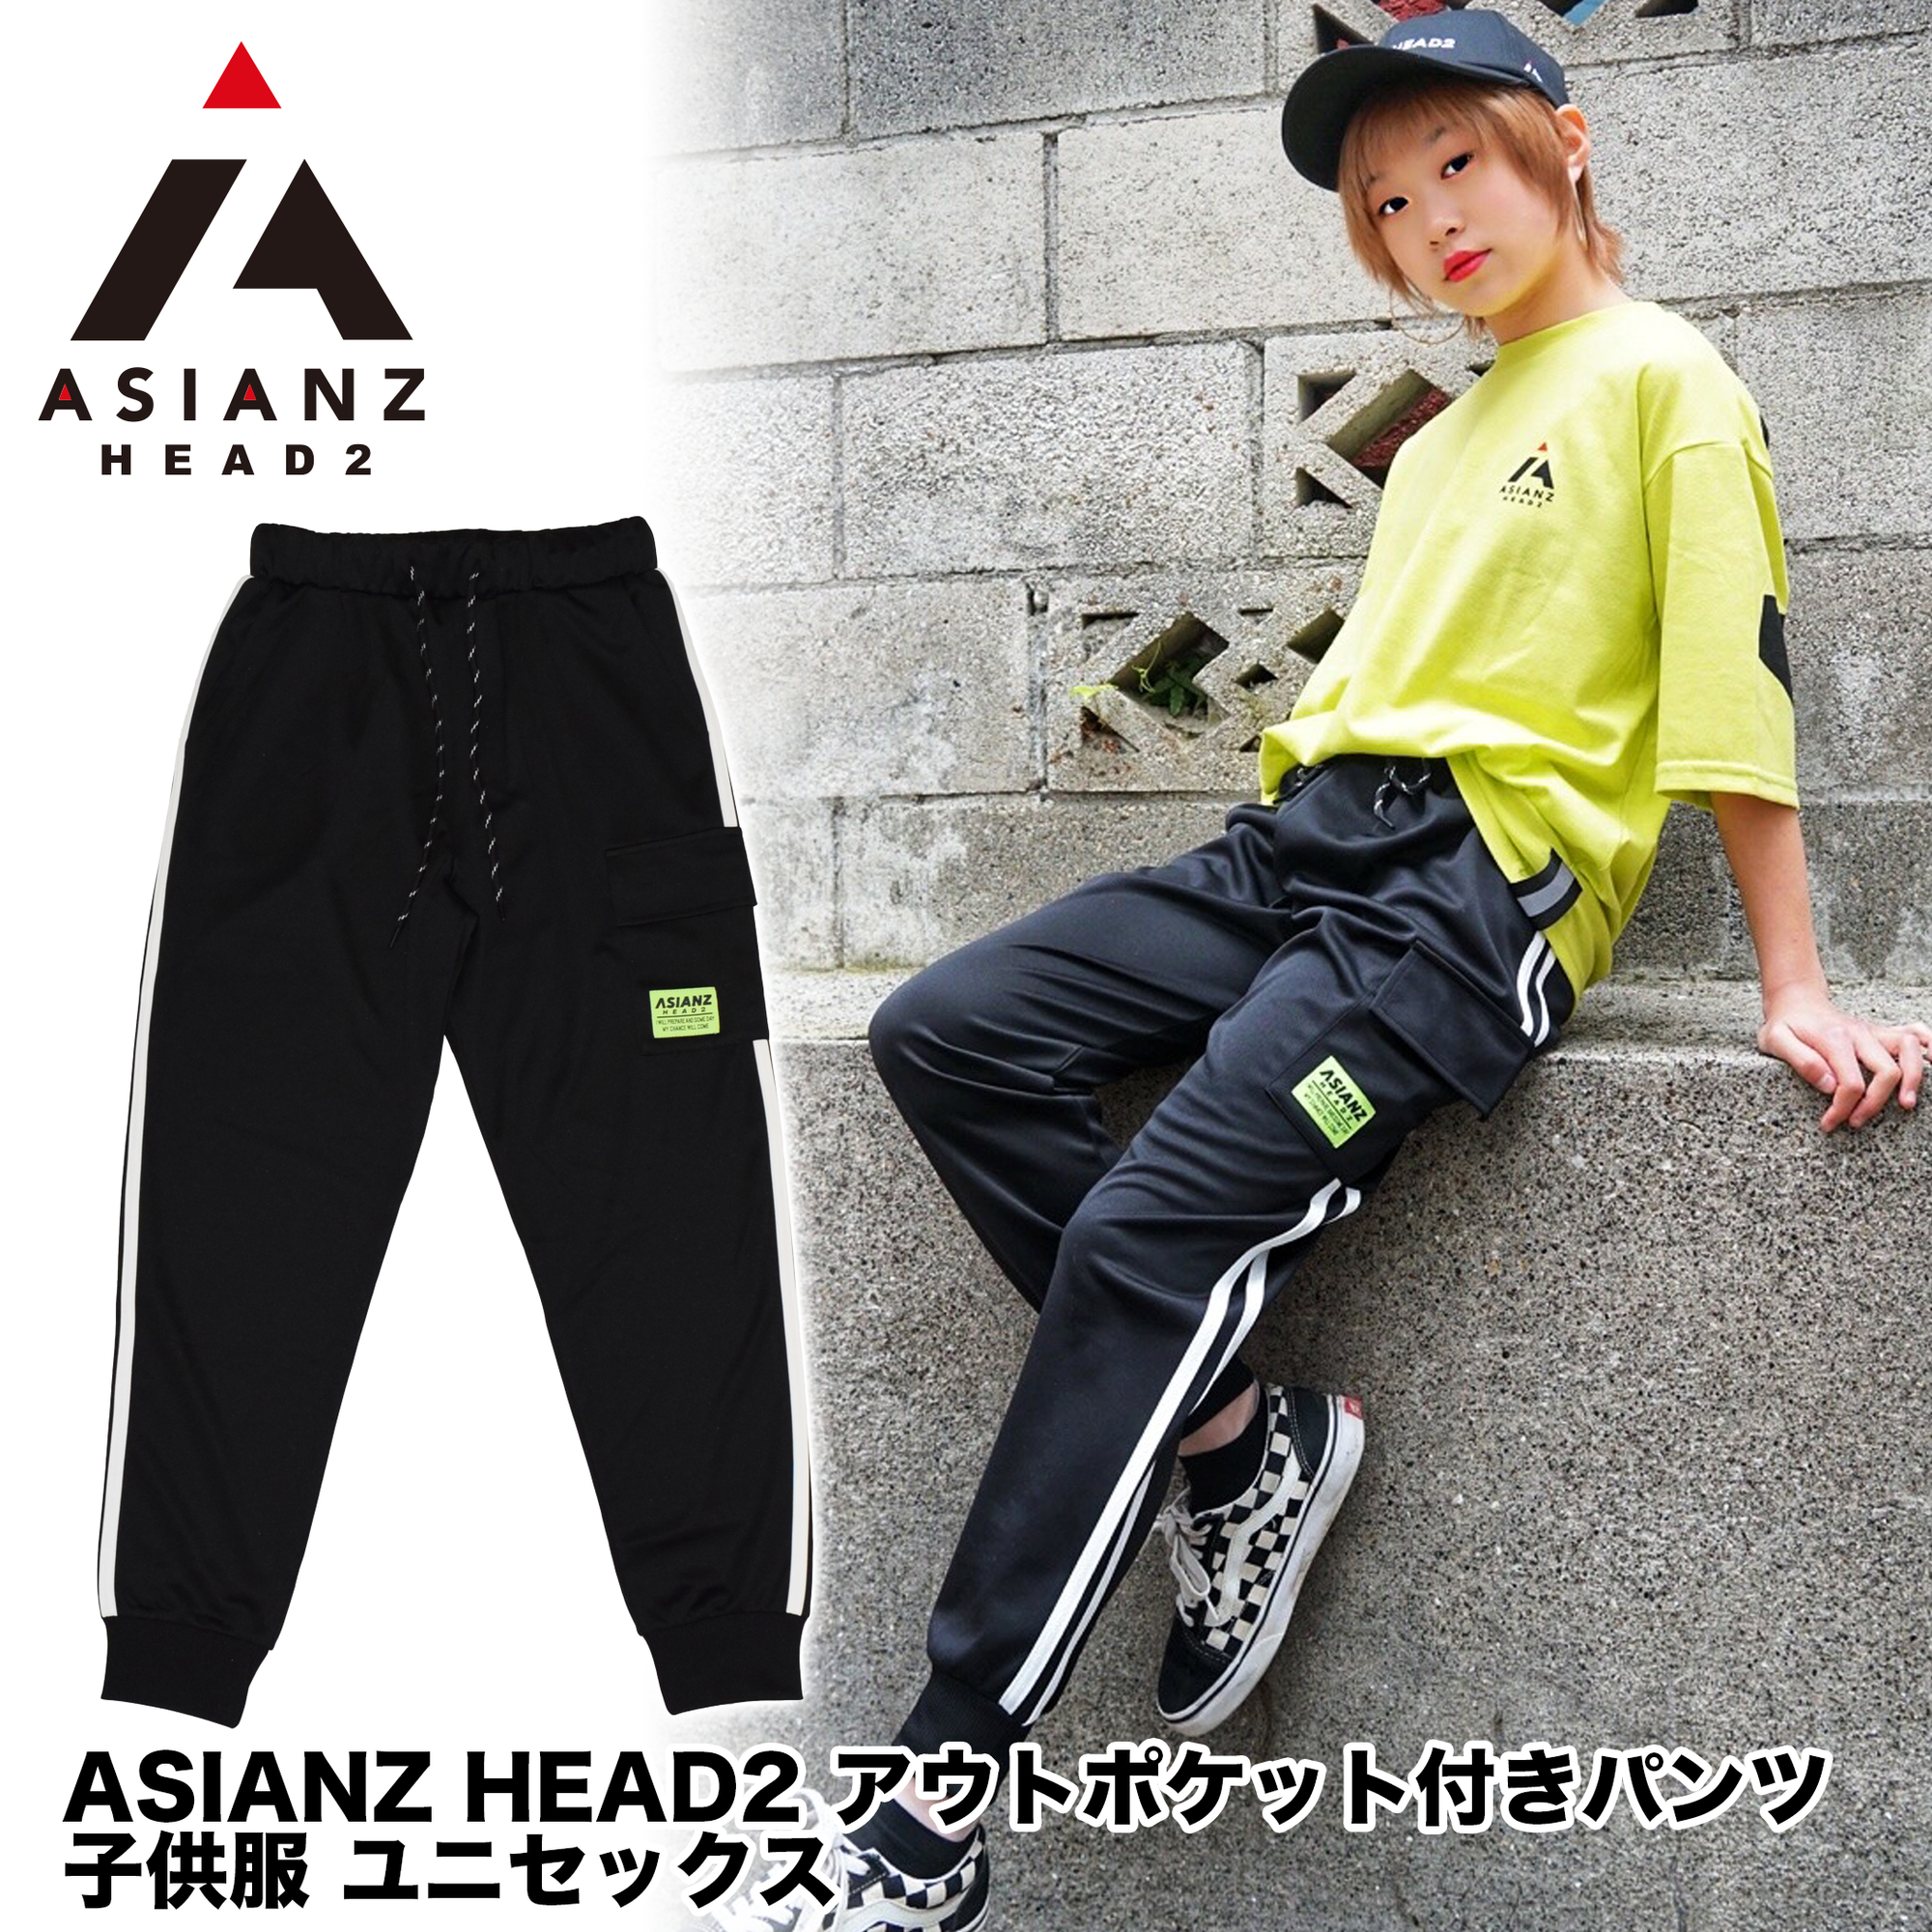 (40%オフ! セール商品)  ASIANZ HEAD2 アウトポケット付きパンツ キッズウェアー